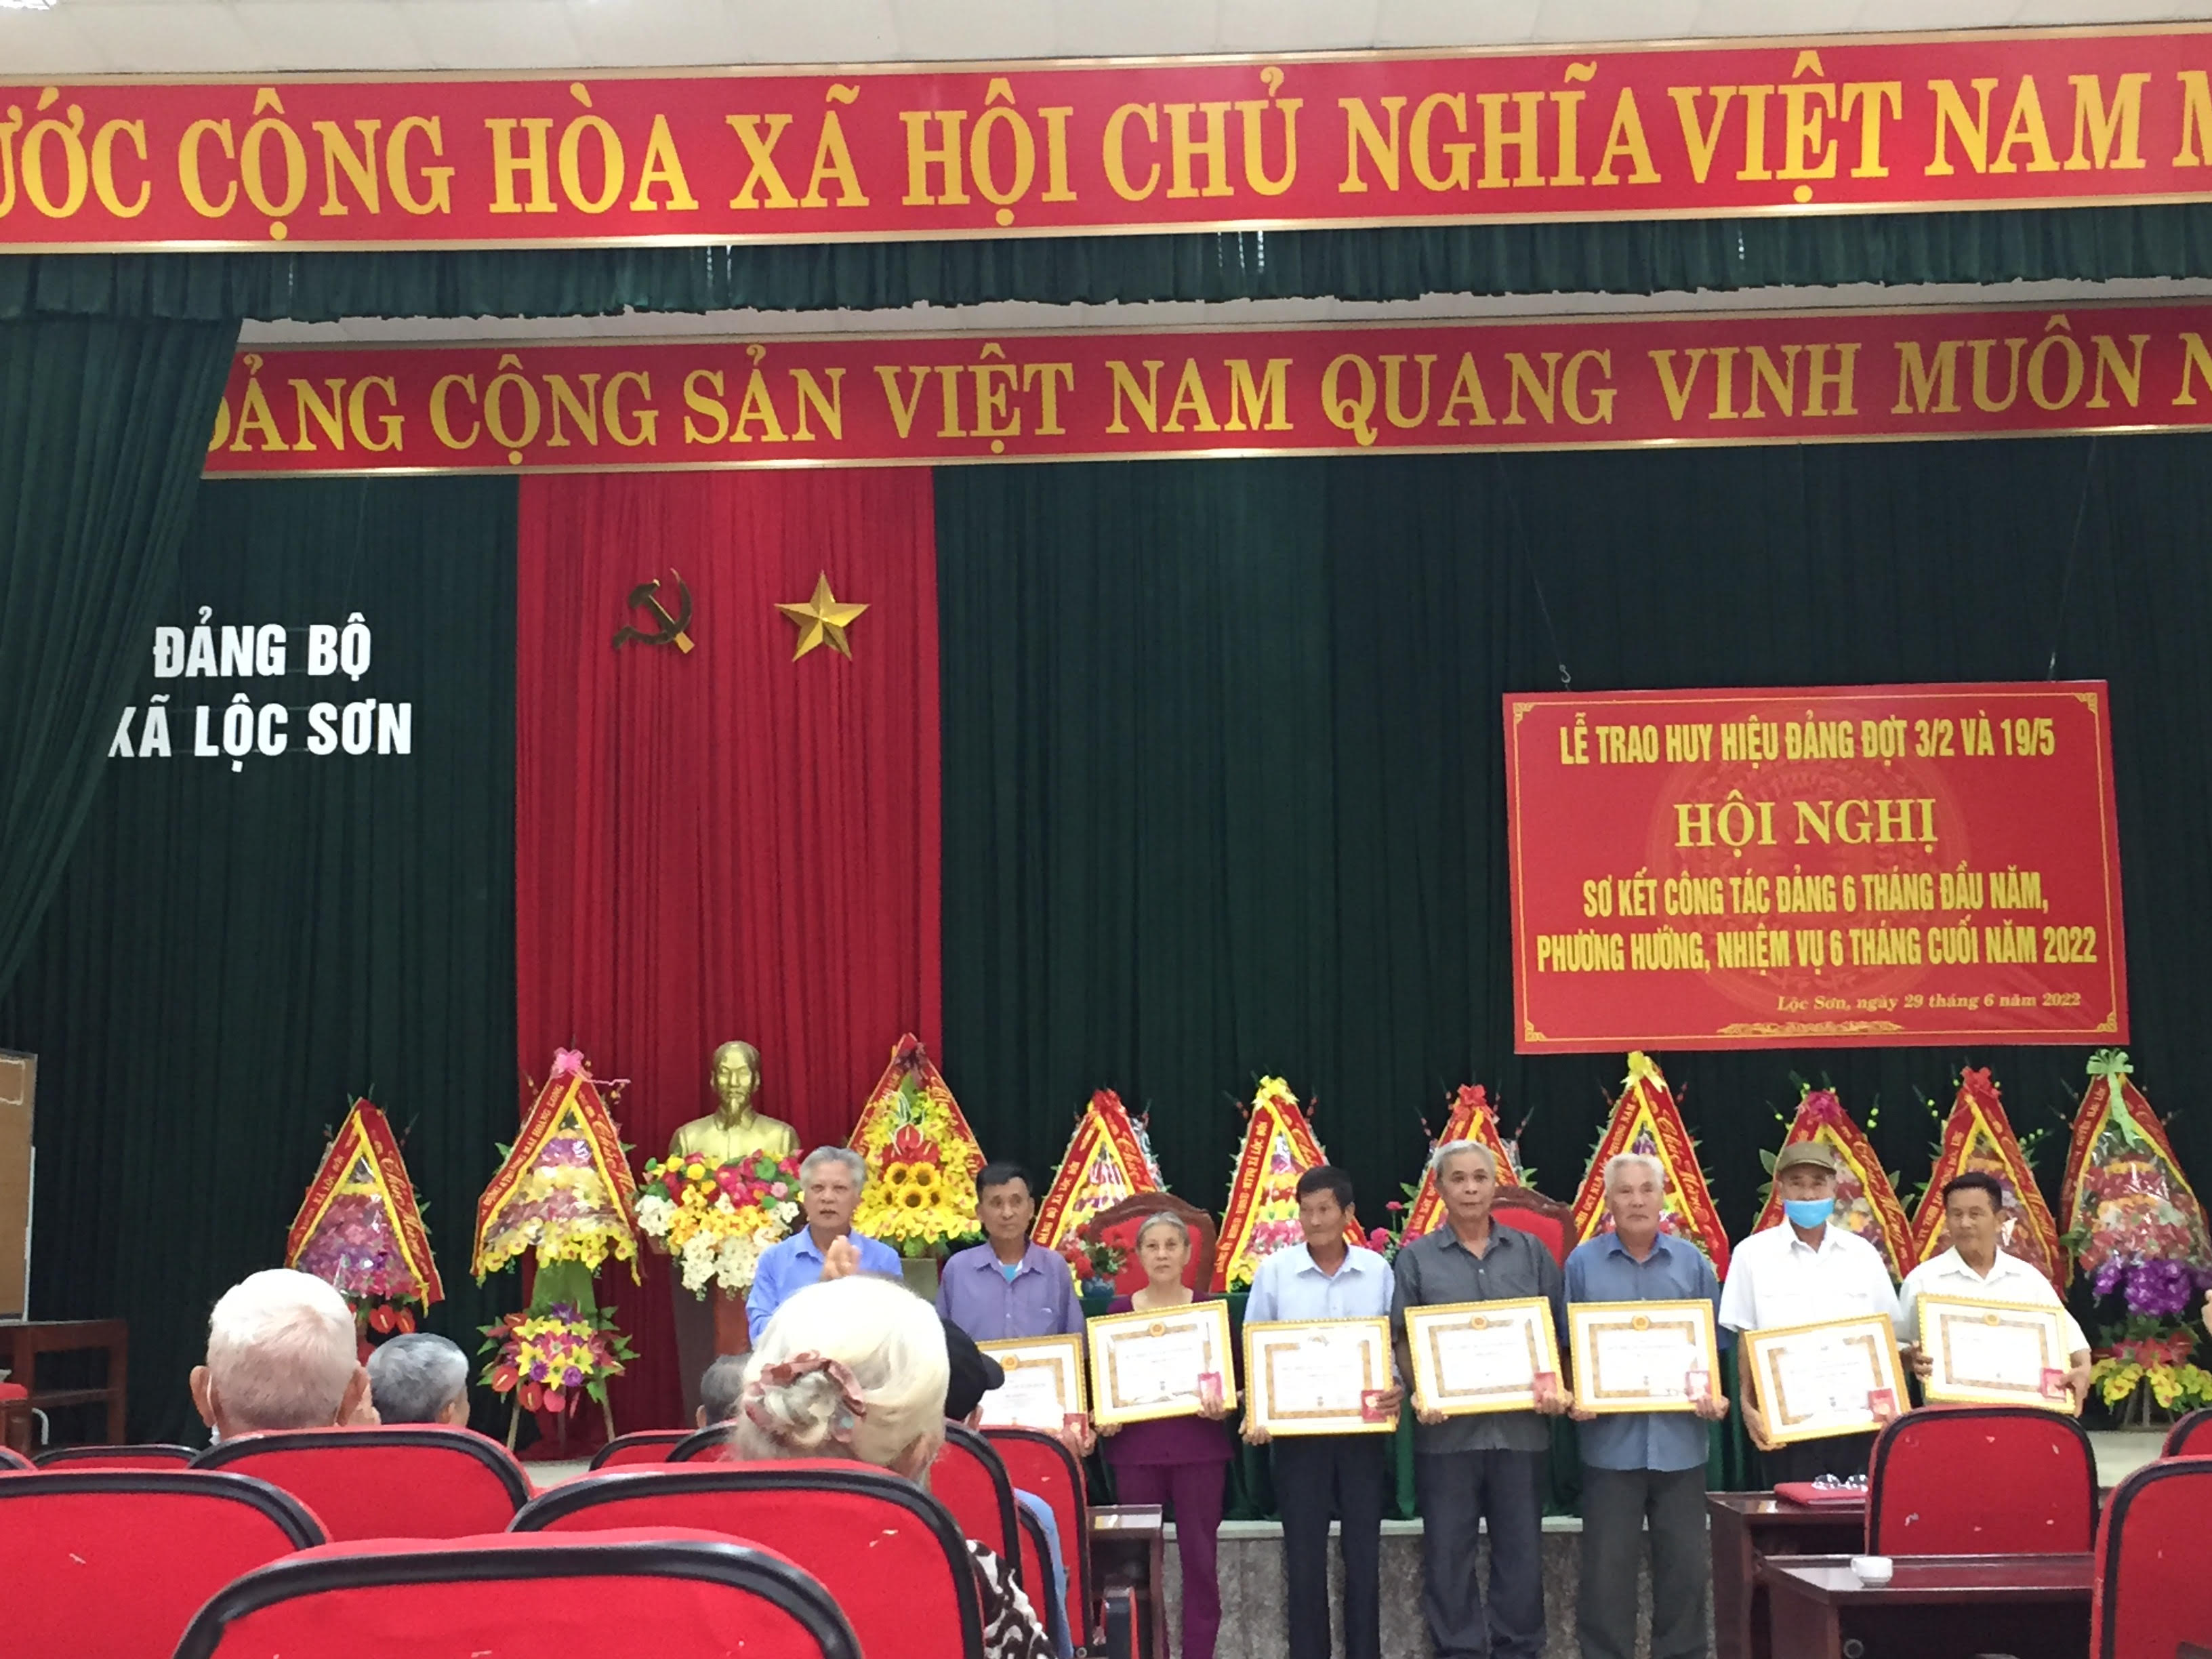 Đảng bộ xã Lộc Sơn tổ chức Lễ trao huy hiệu Đảng đợt 03/02 và đợt 19/5 2022. Hội nghị sơ kết công tác Đảng 6 tháng đầu năm, Phương hướng, nhiệm vụ 6 tháng cuối năm 2022